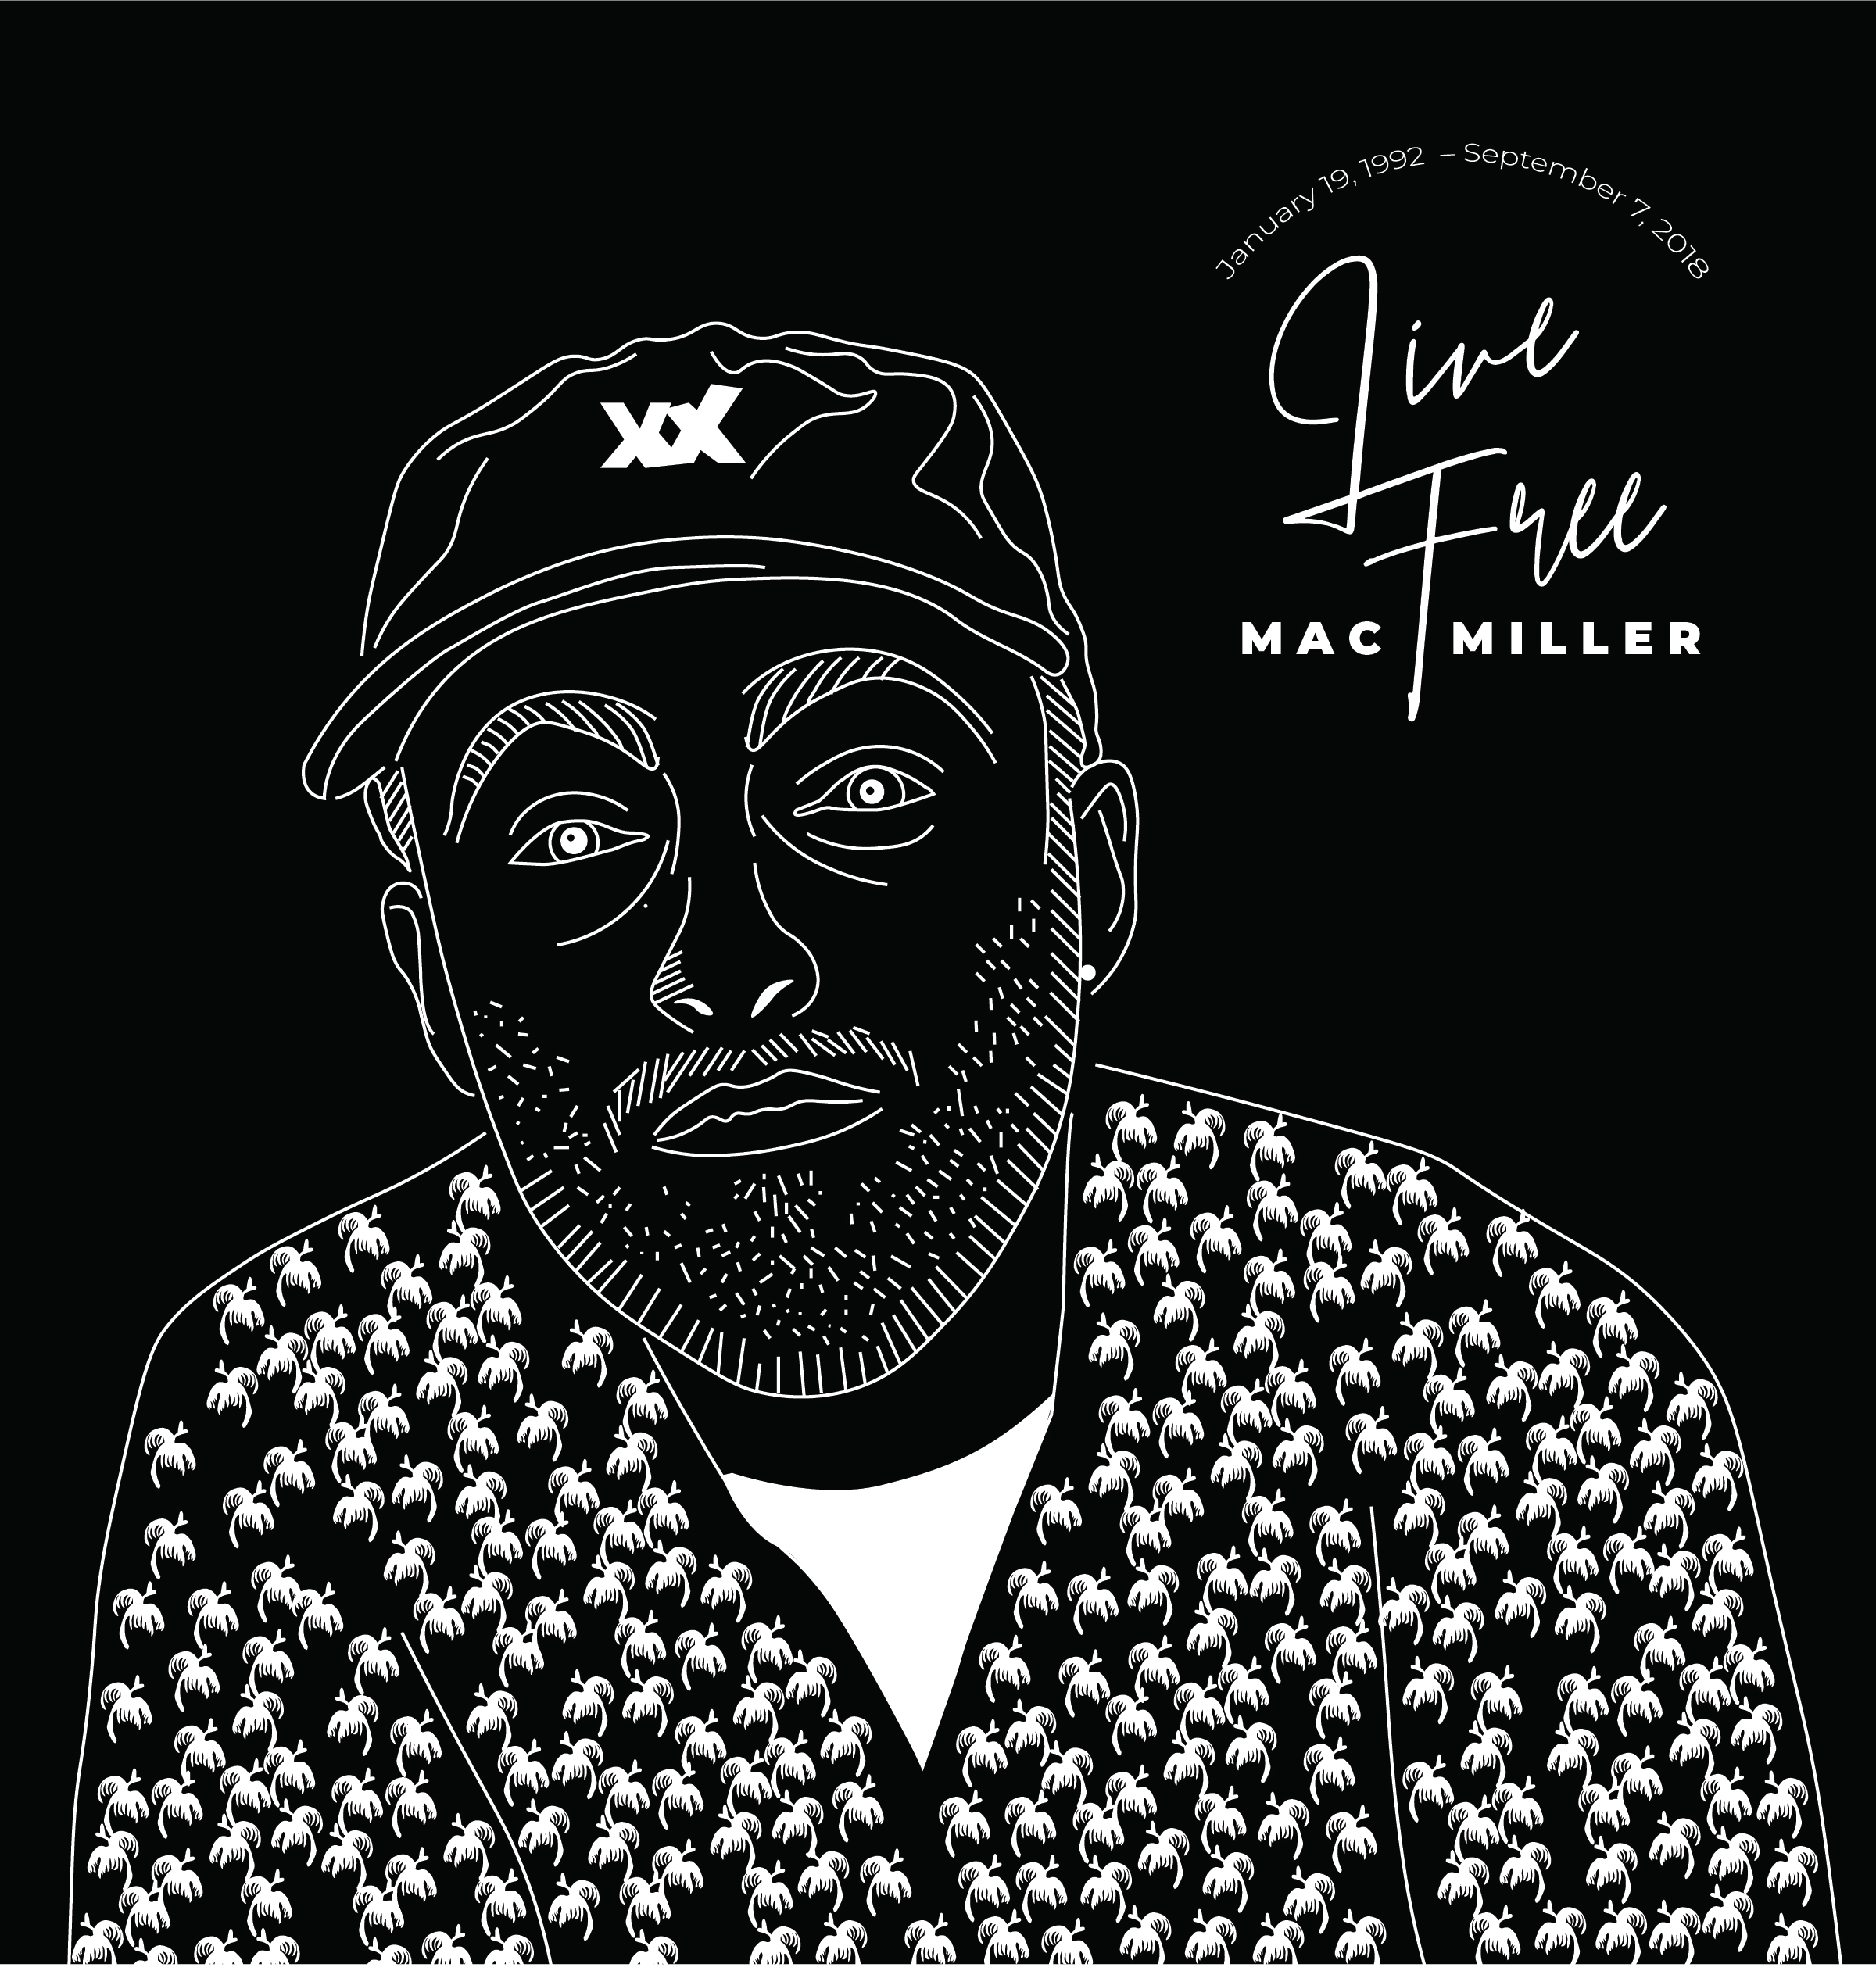 Mac Miller Tribute